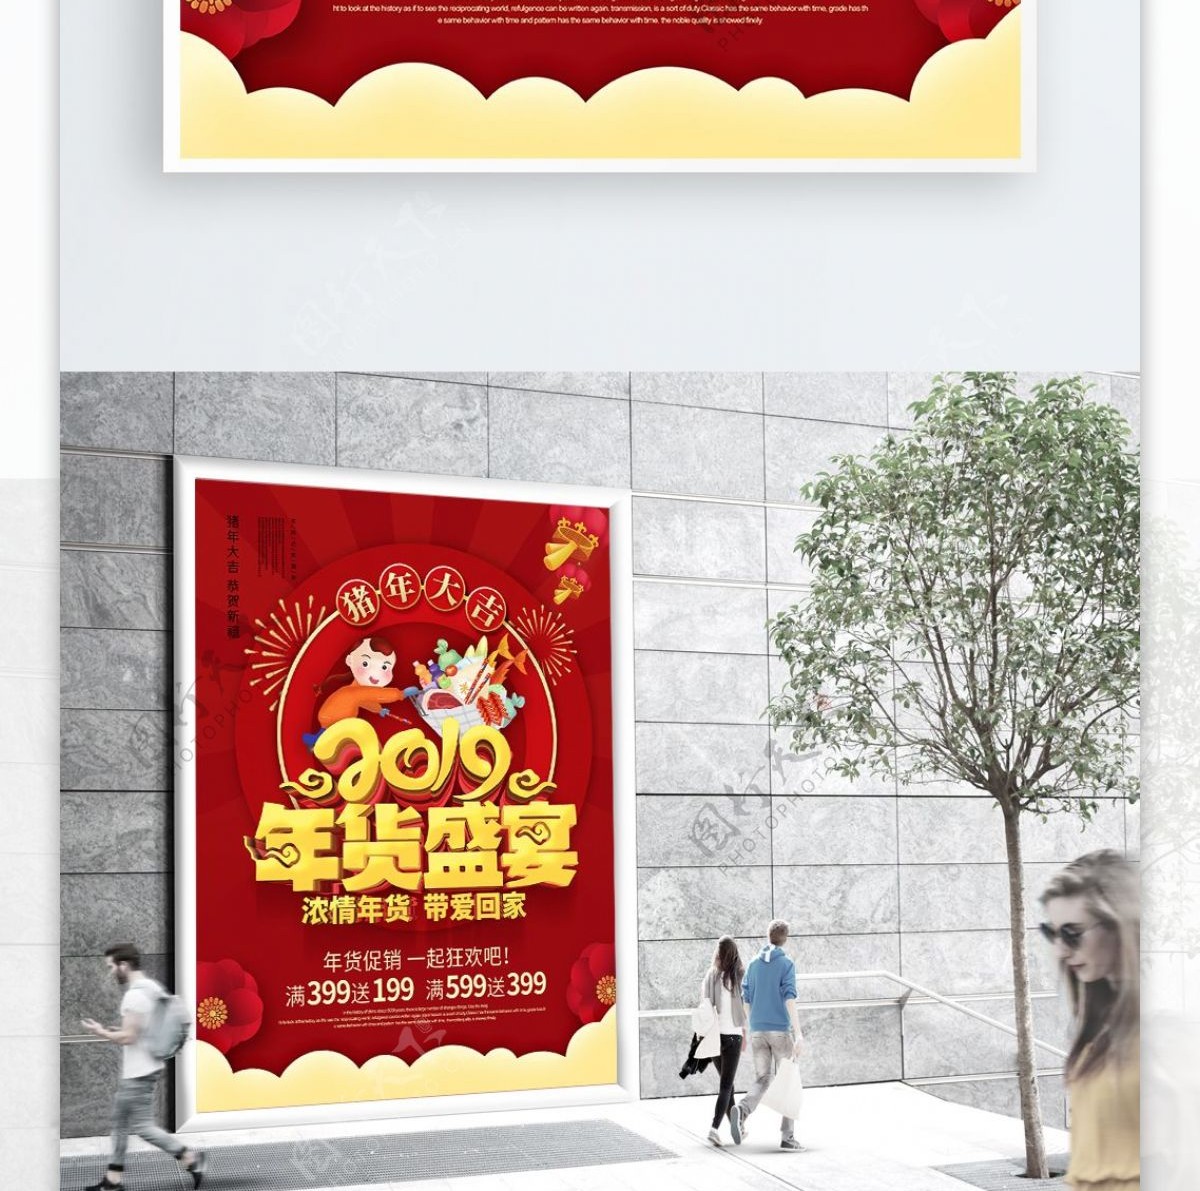 红色喜庆2019年货盛宴年货节促销海报